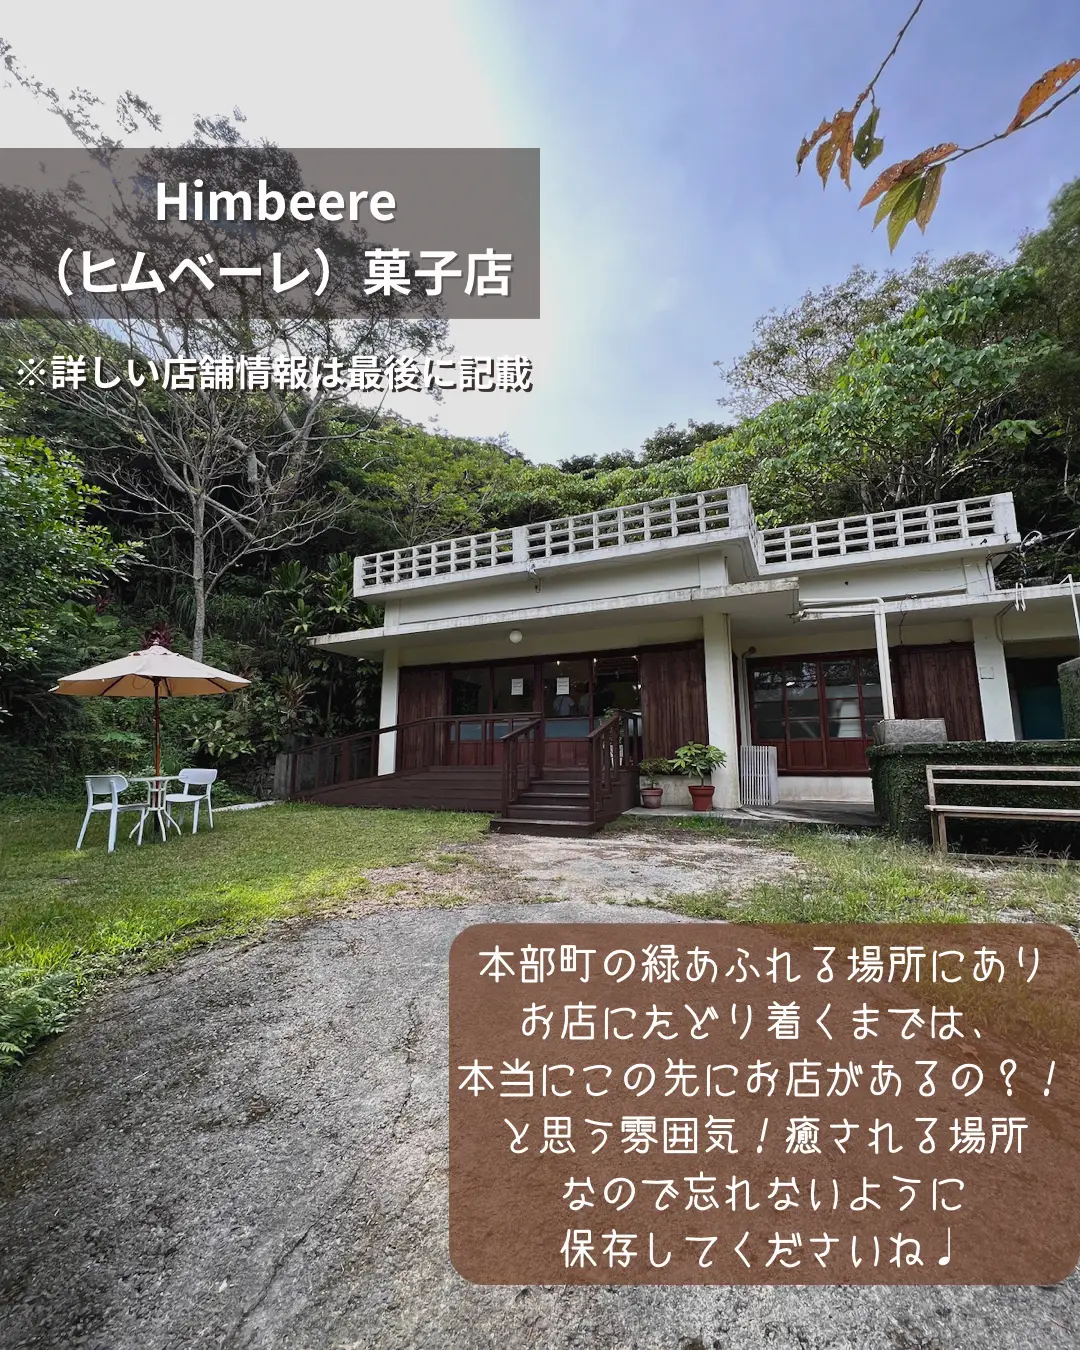 【沖縄】山奥にひっそり佇む焼き菓子のお店「Himbeere（ヒムベーレ）菓子店」の画像 (2枚目)